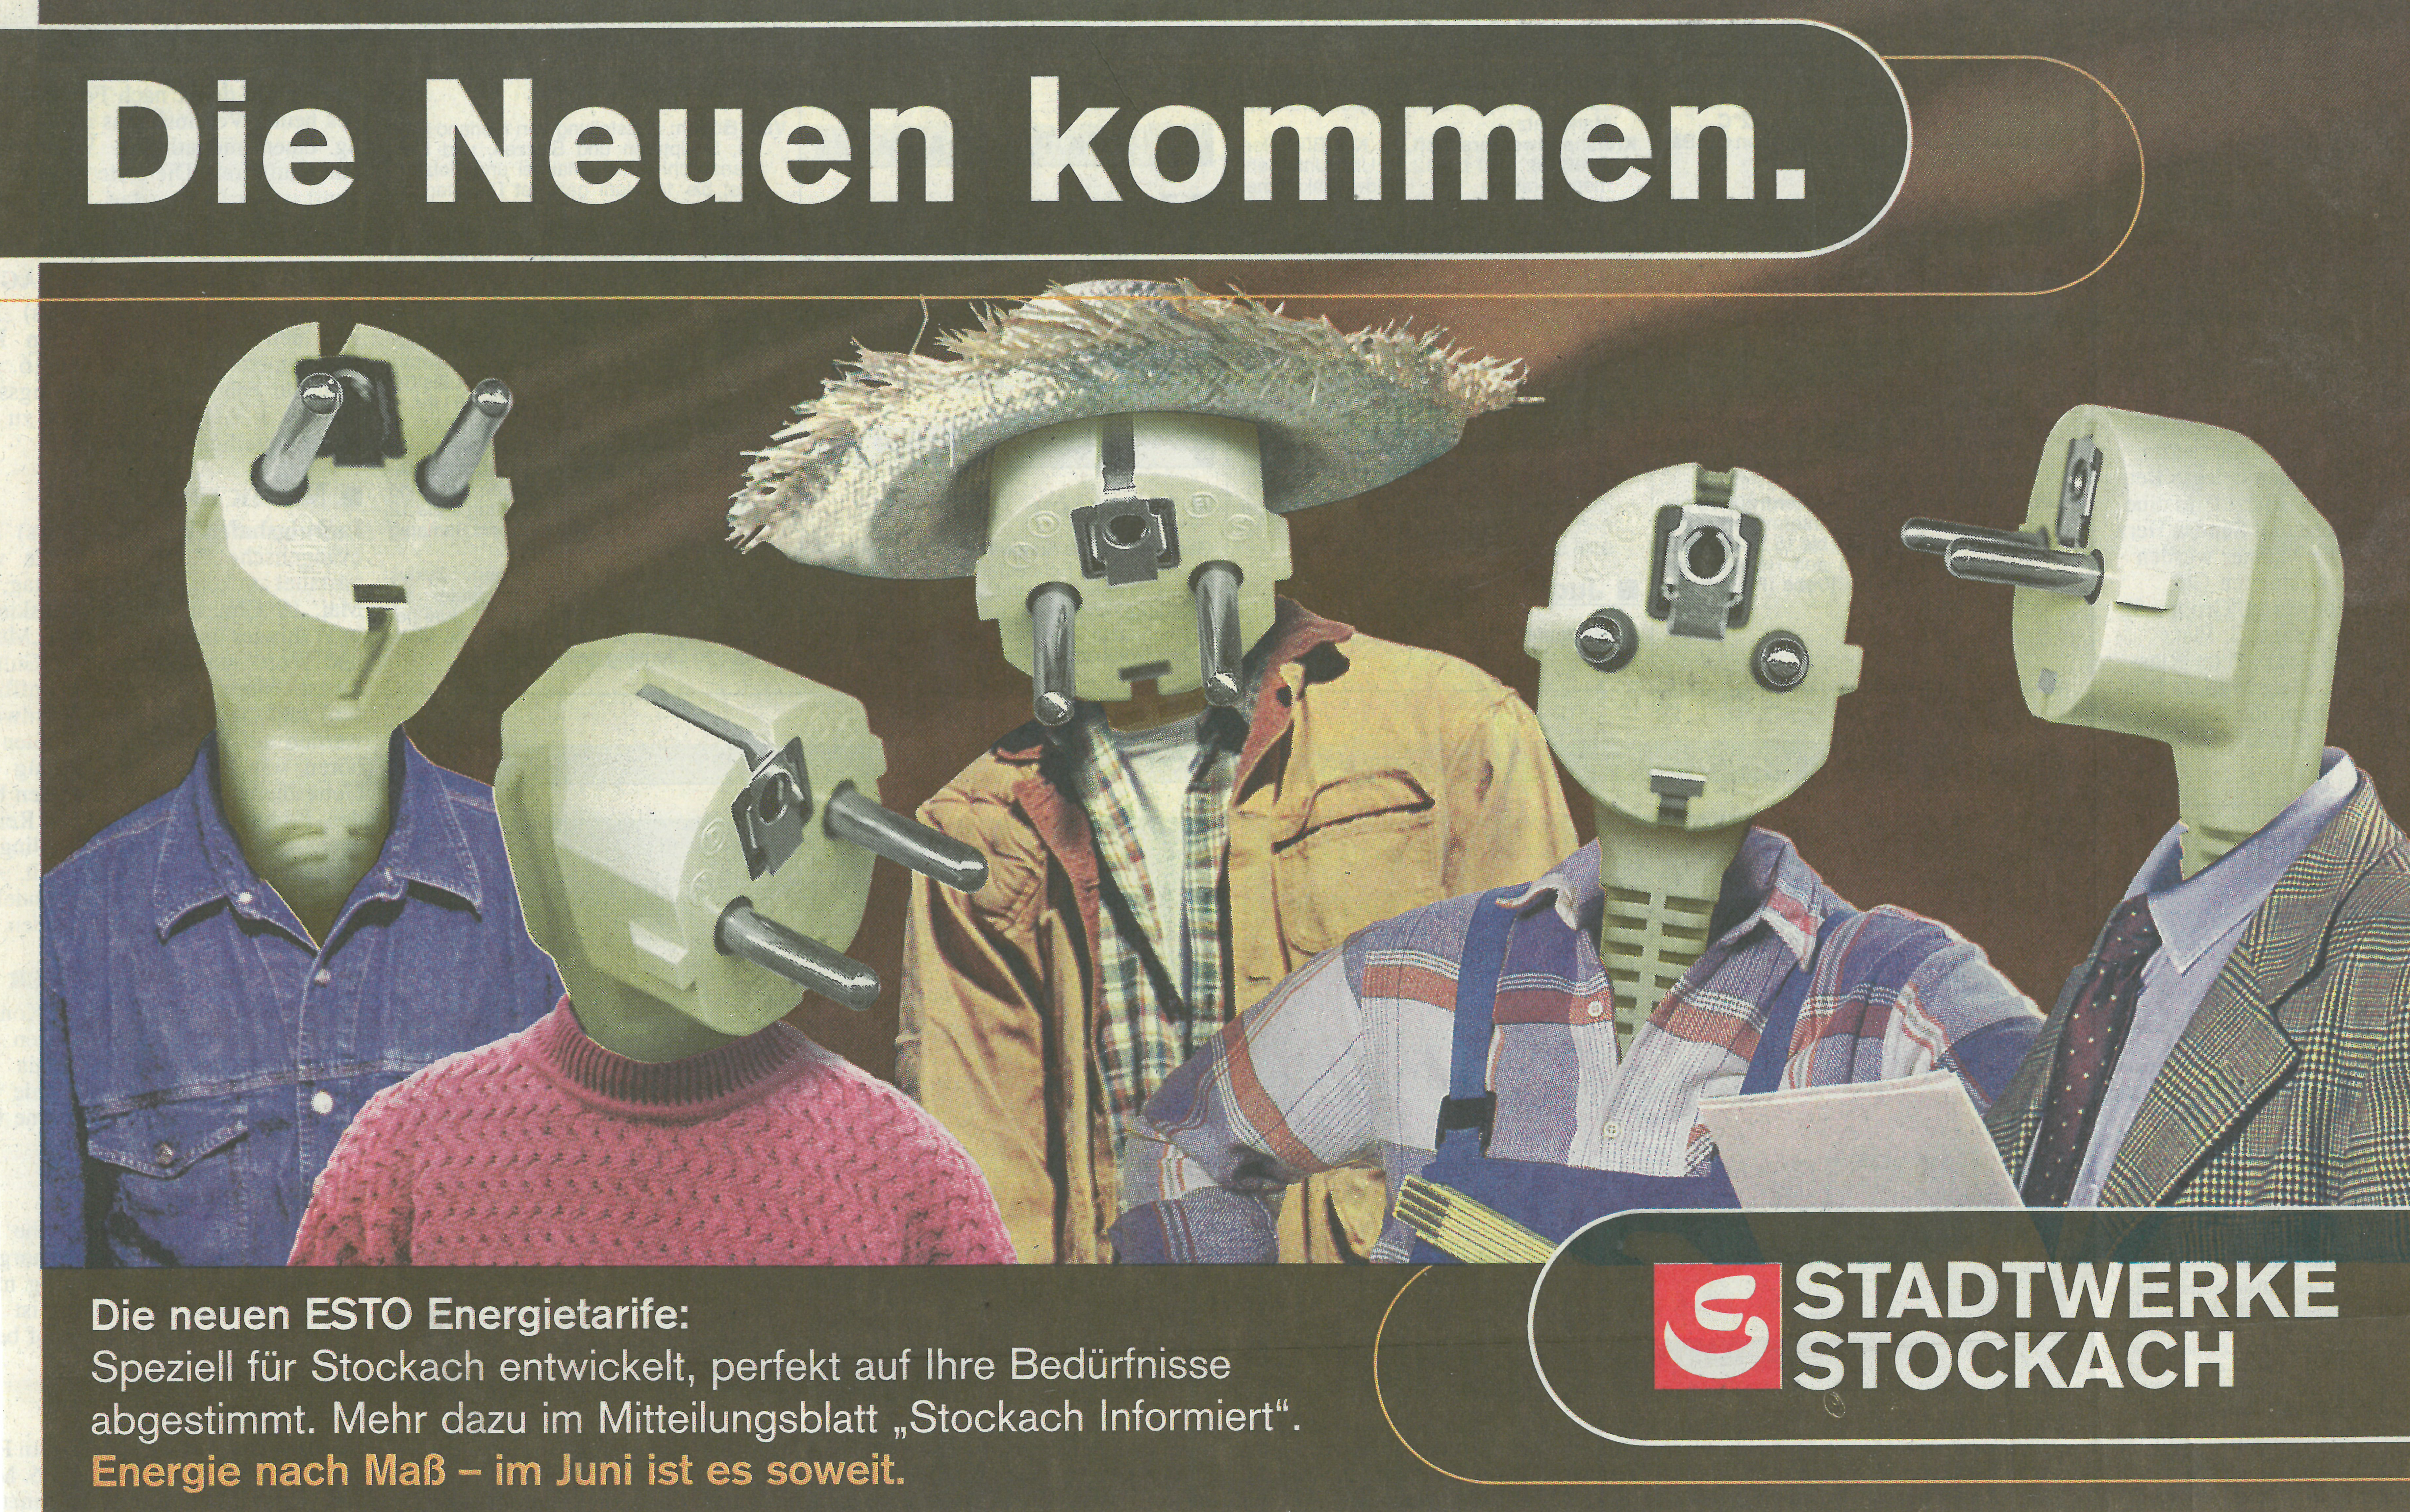  Werbung der Stadtwerke für den Tarifwechsel 2000, Bild: Stadtwerke Stockach 